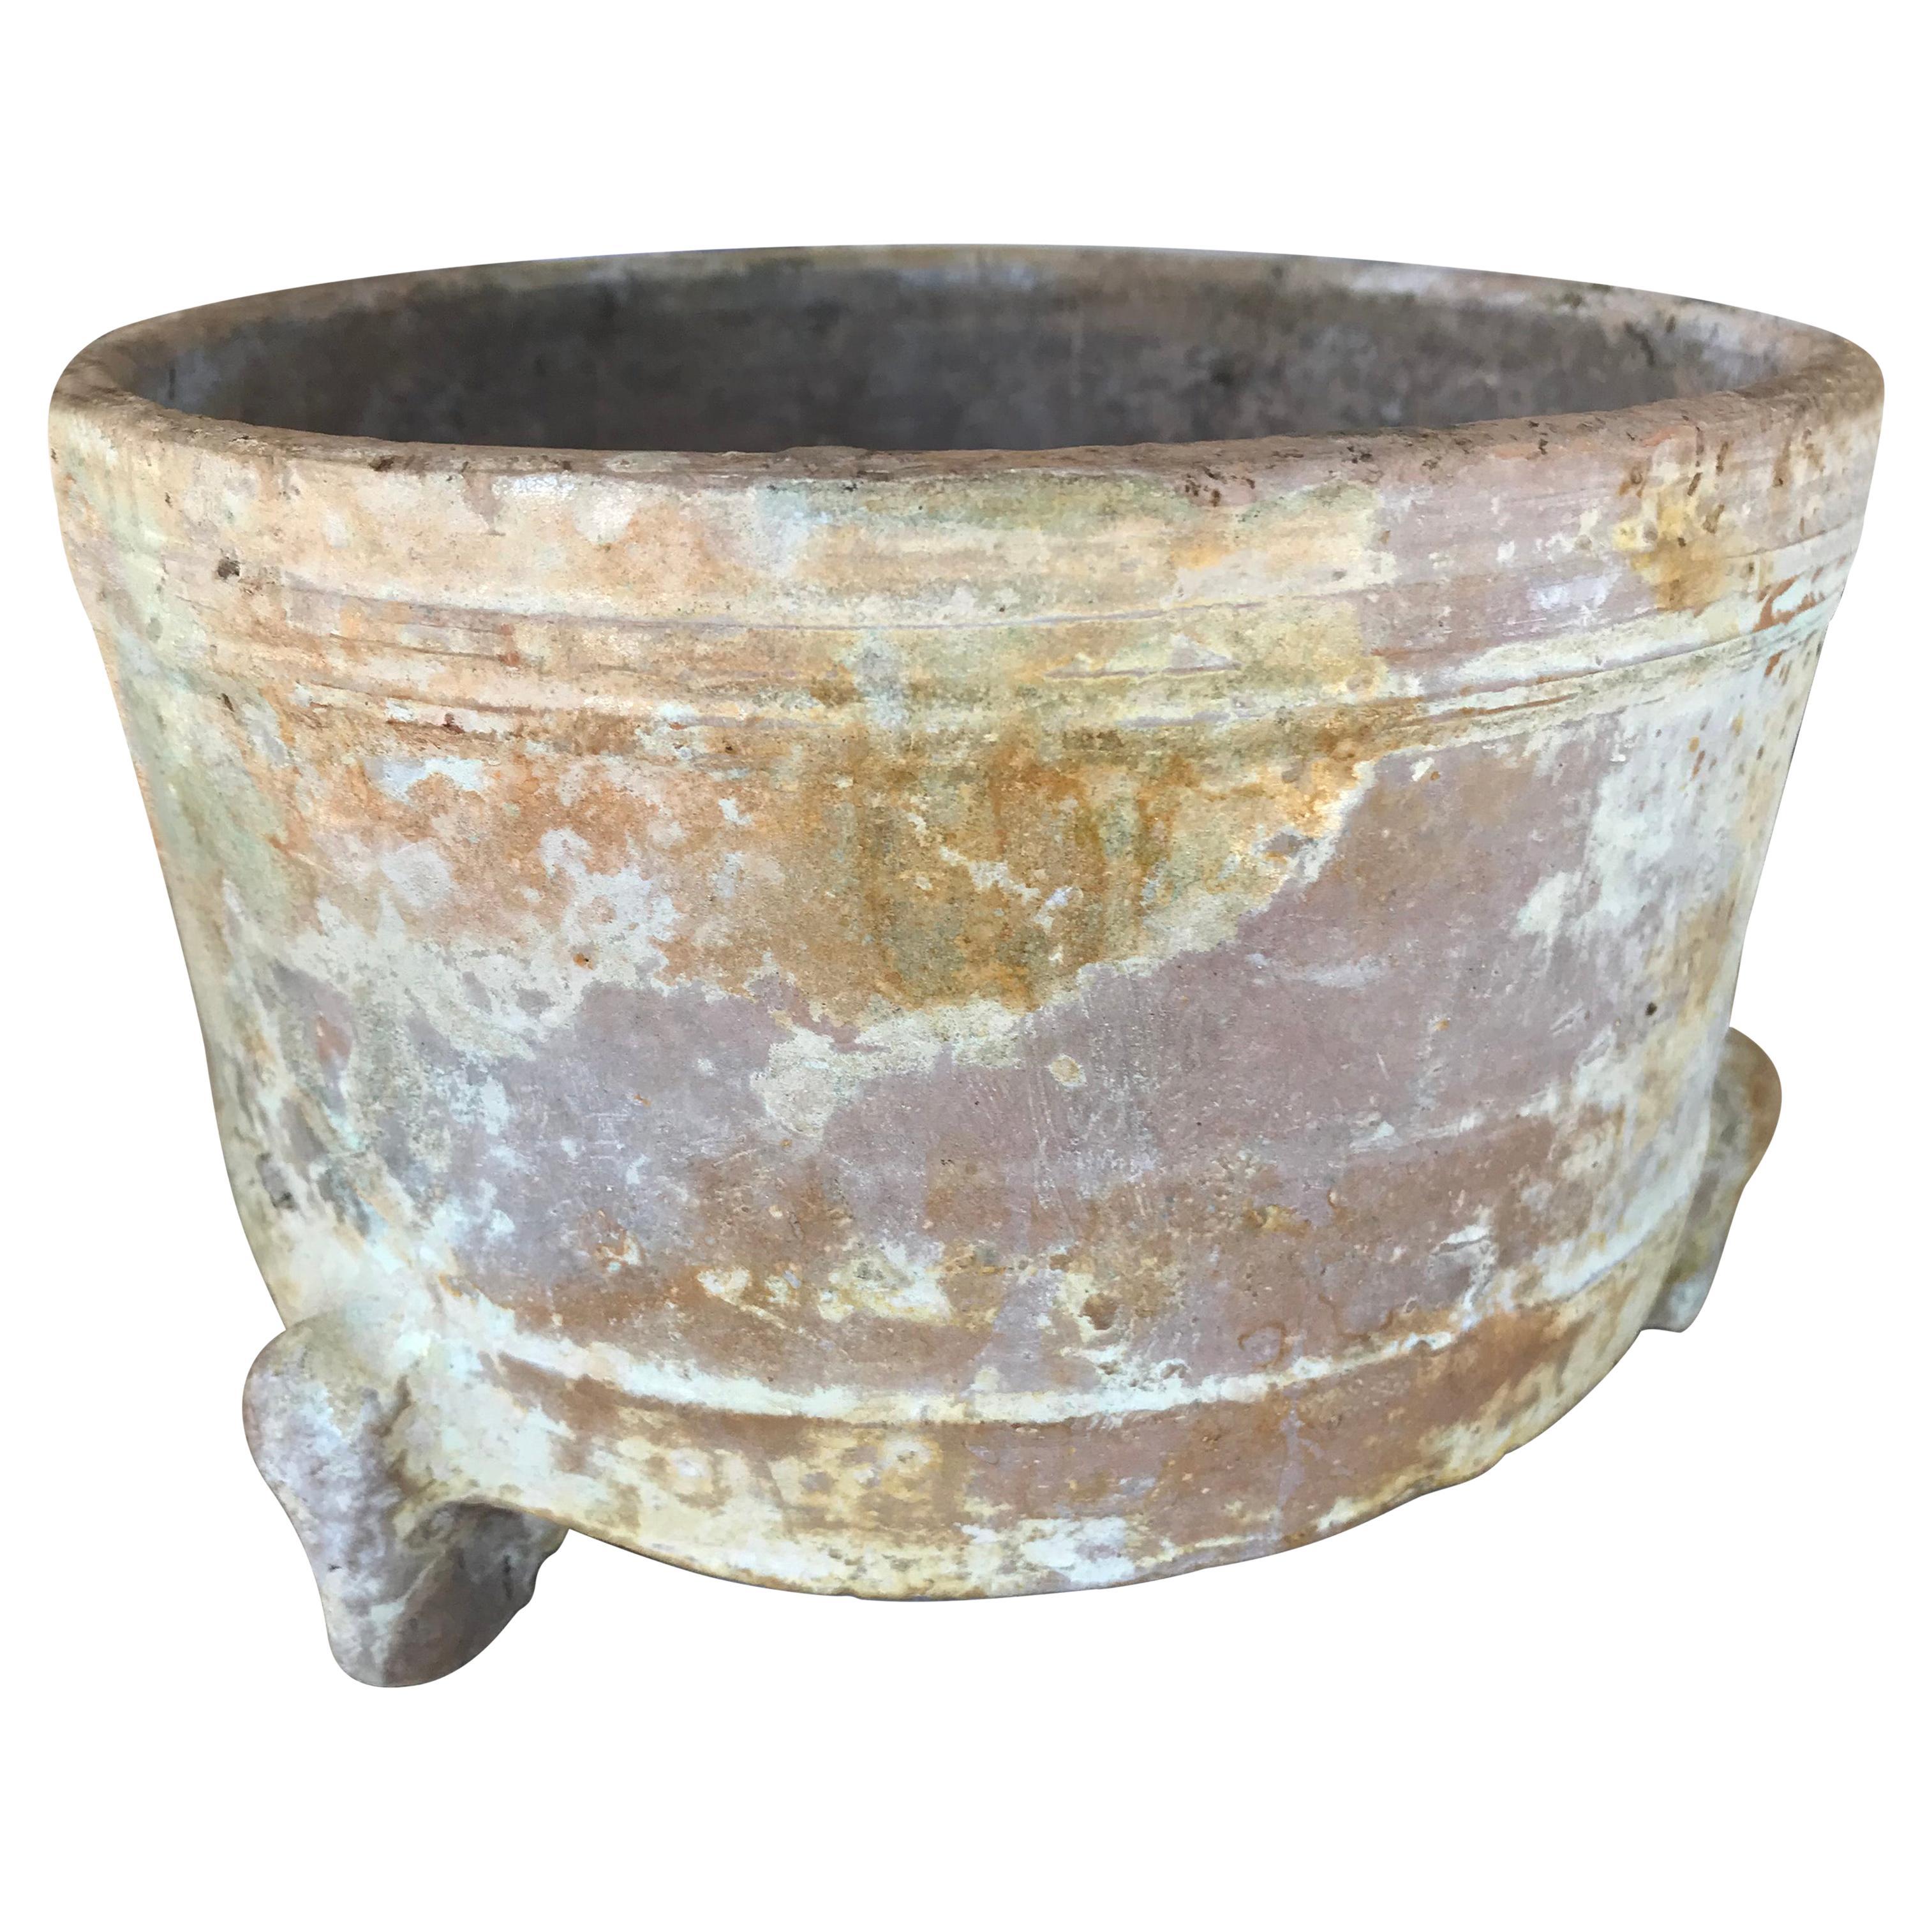 Jardinière ou cache-pot en argile de la dynastie Han